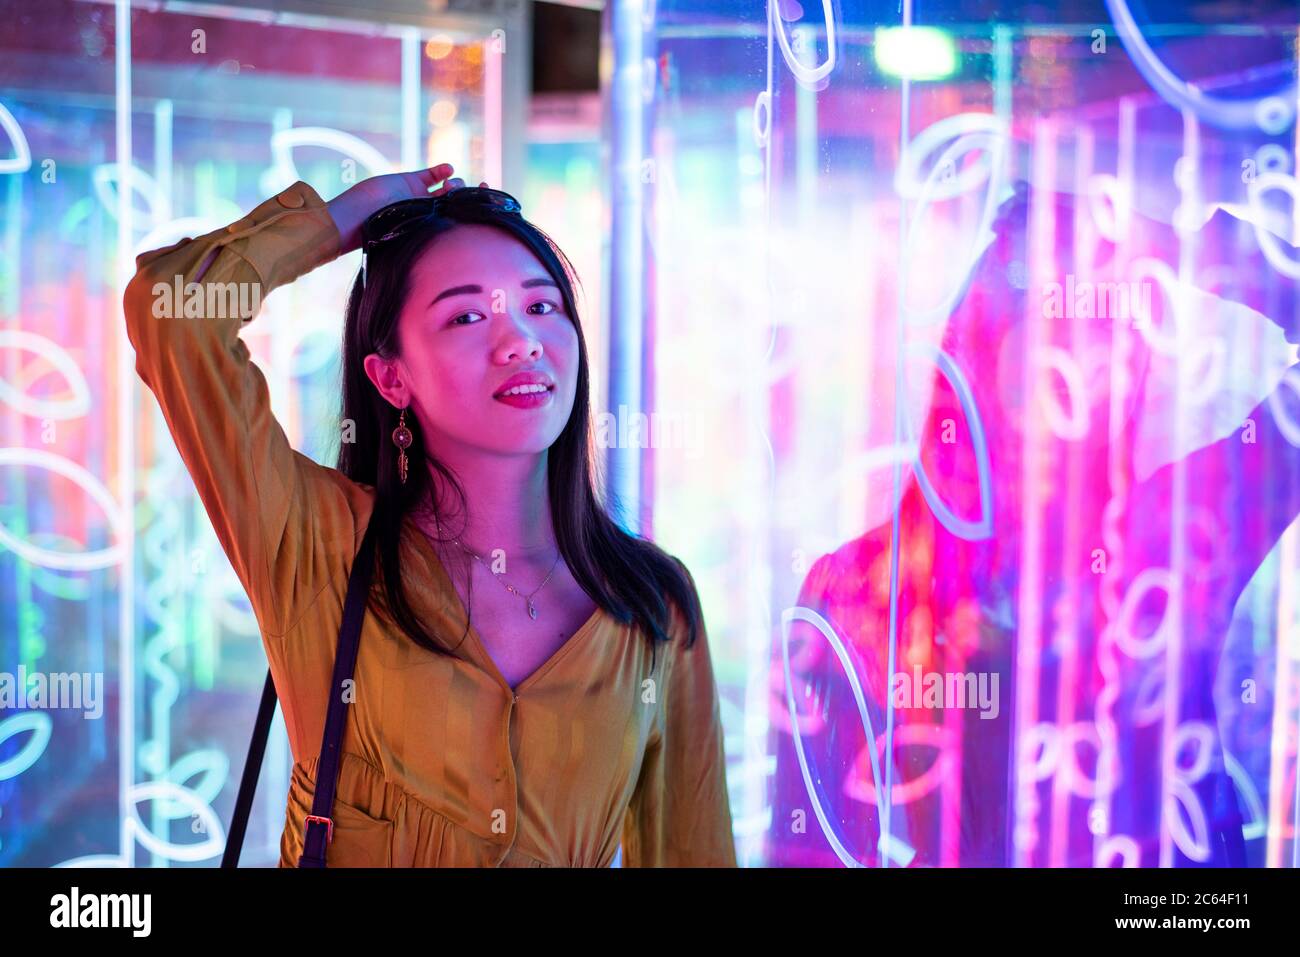 Asiatische Frau Porträt beleuchtet von Neon beleuchteten Spiegeln in der Nacht Stockfoto